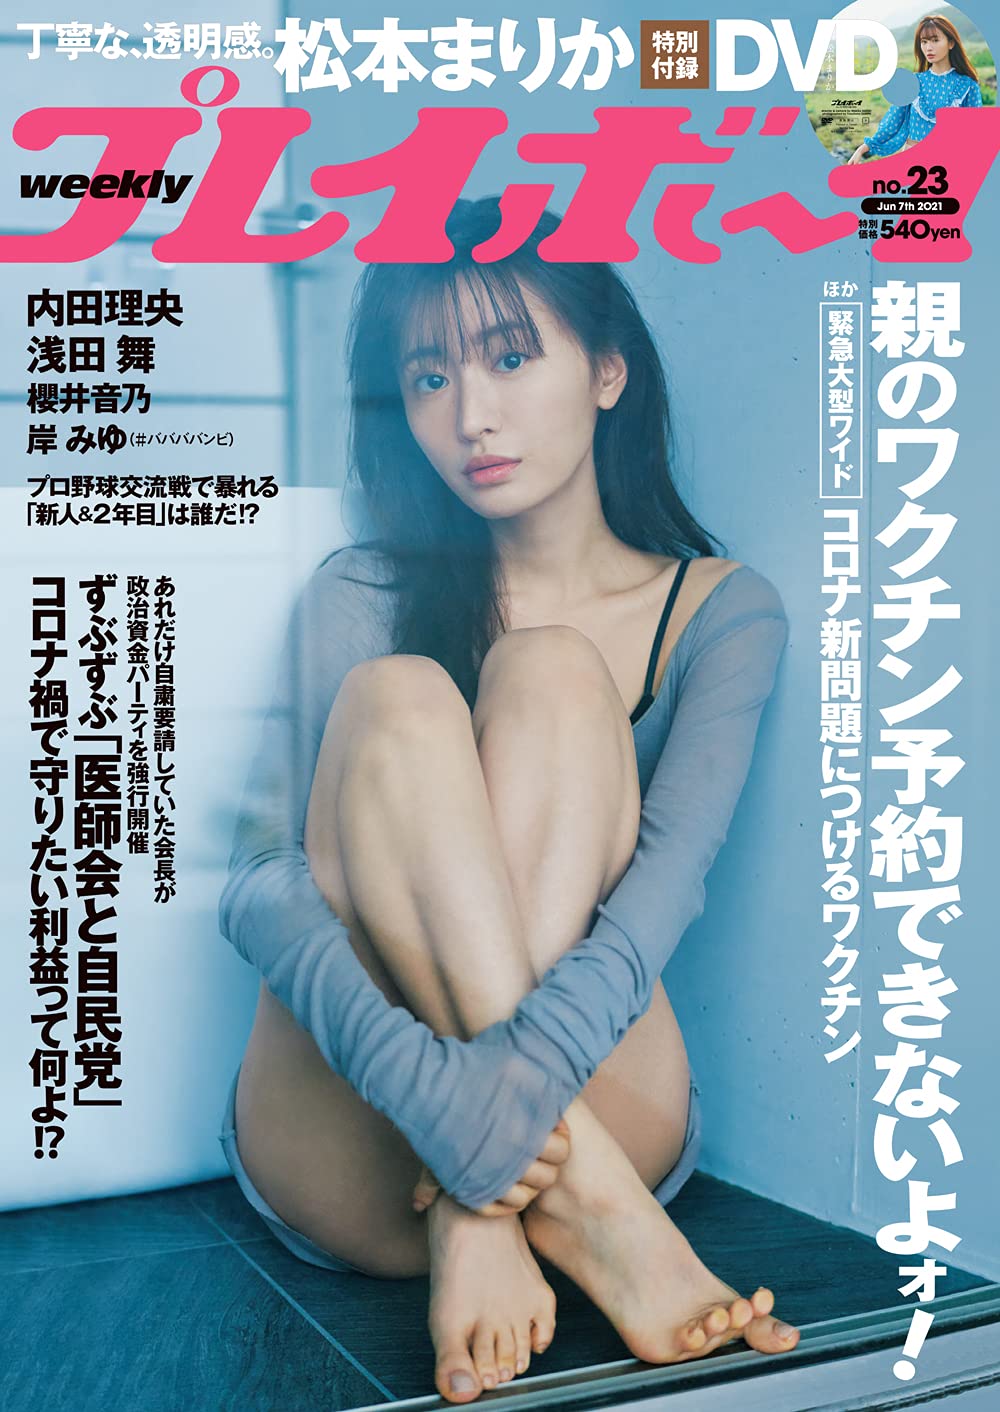  週刊プレイボーイ 2021年6月7日号 (No.23) 雑誌